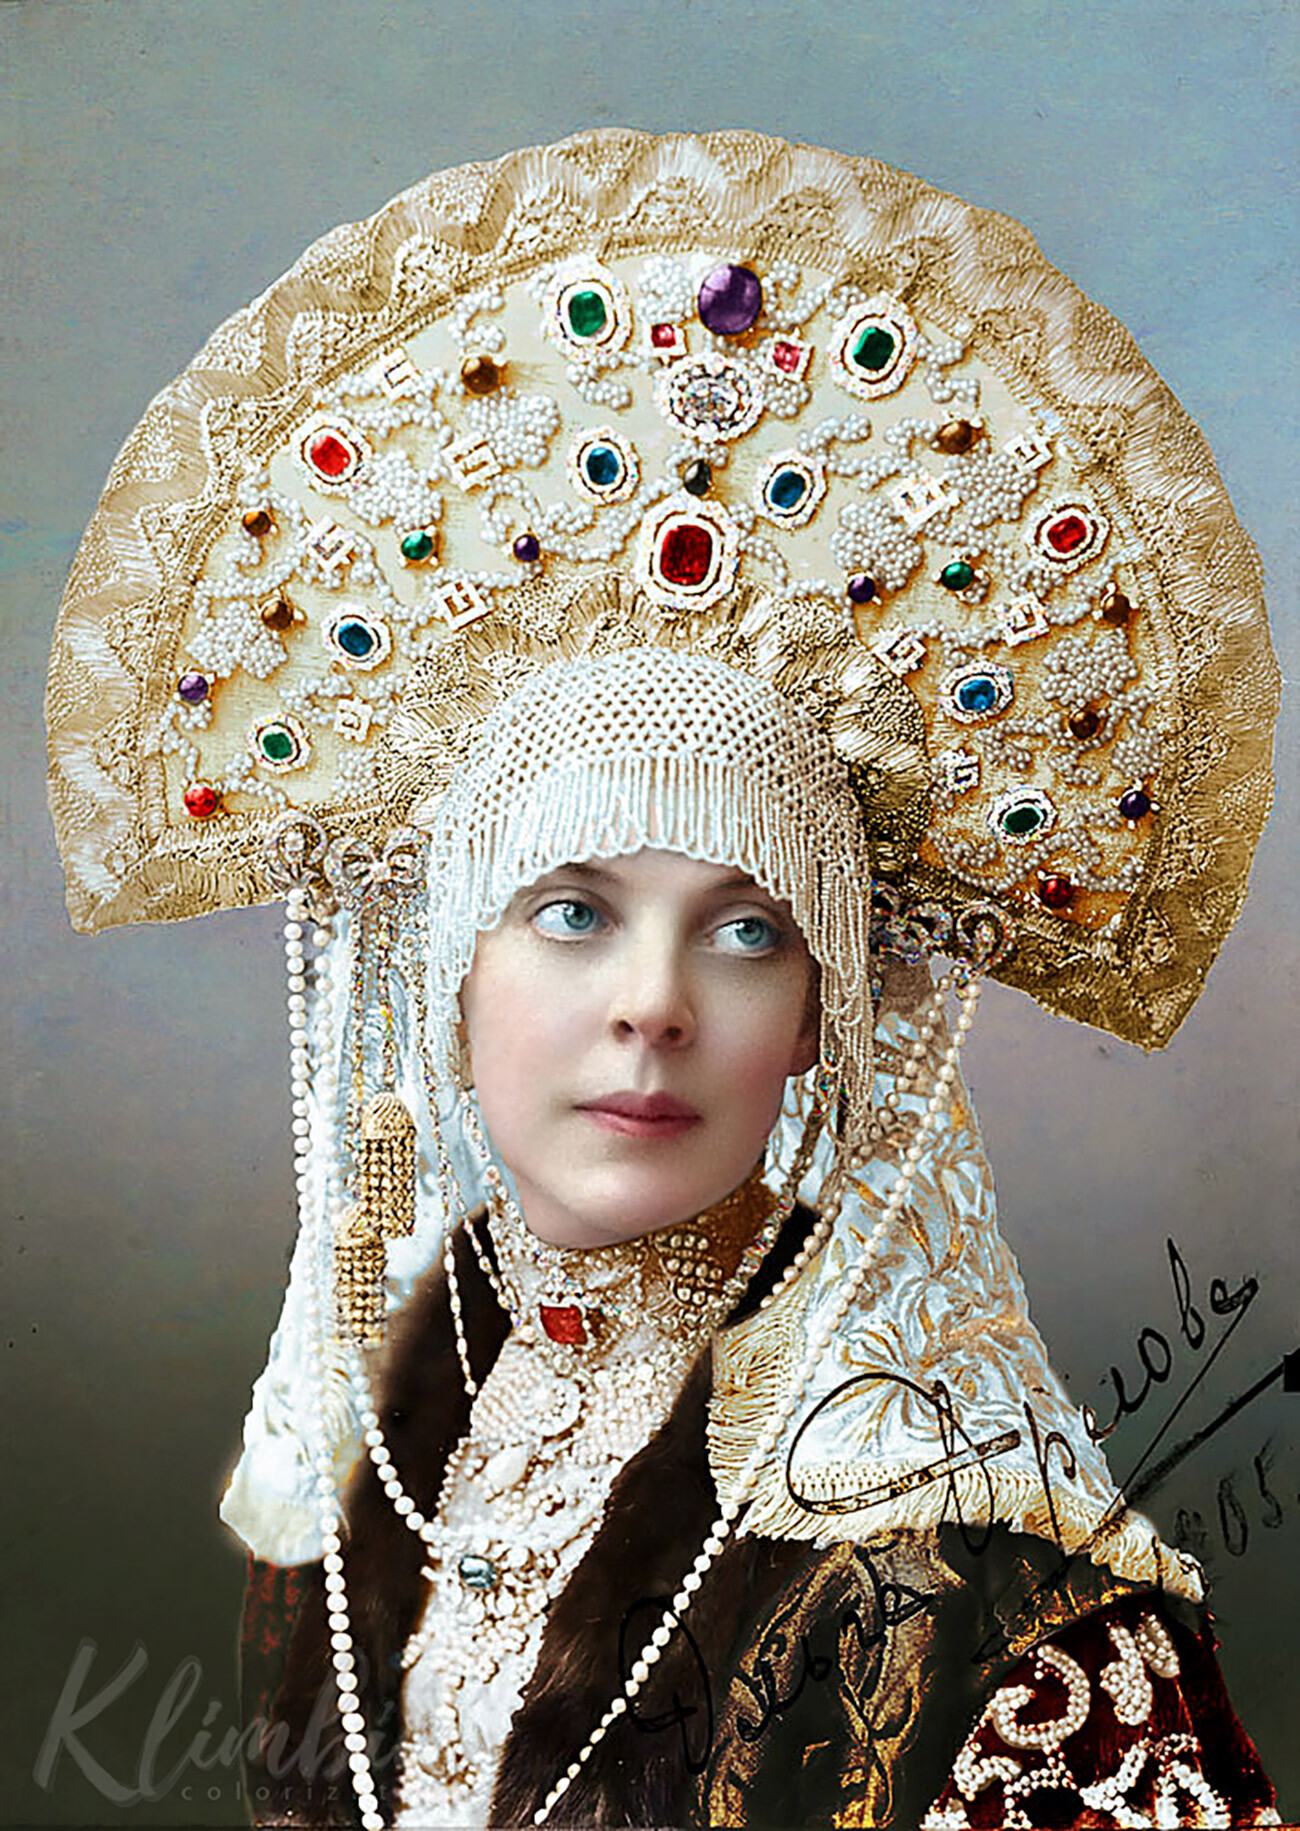 Porträt der Gräfin Olga Orlowa

